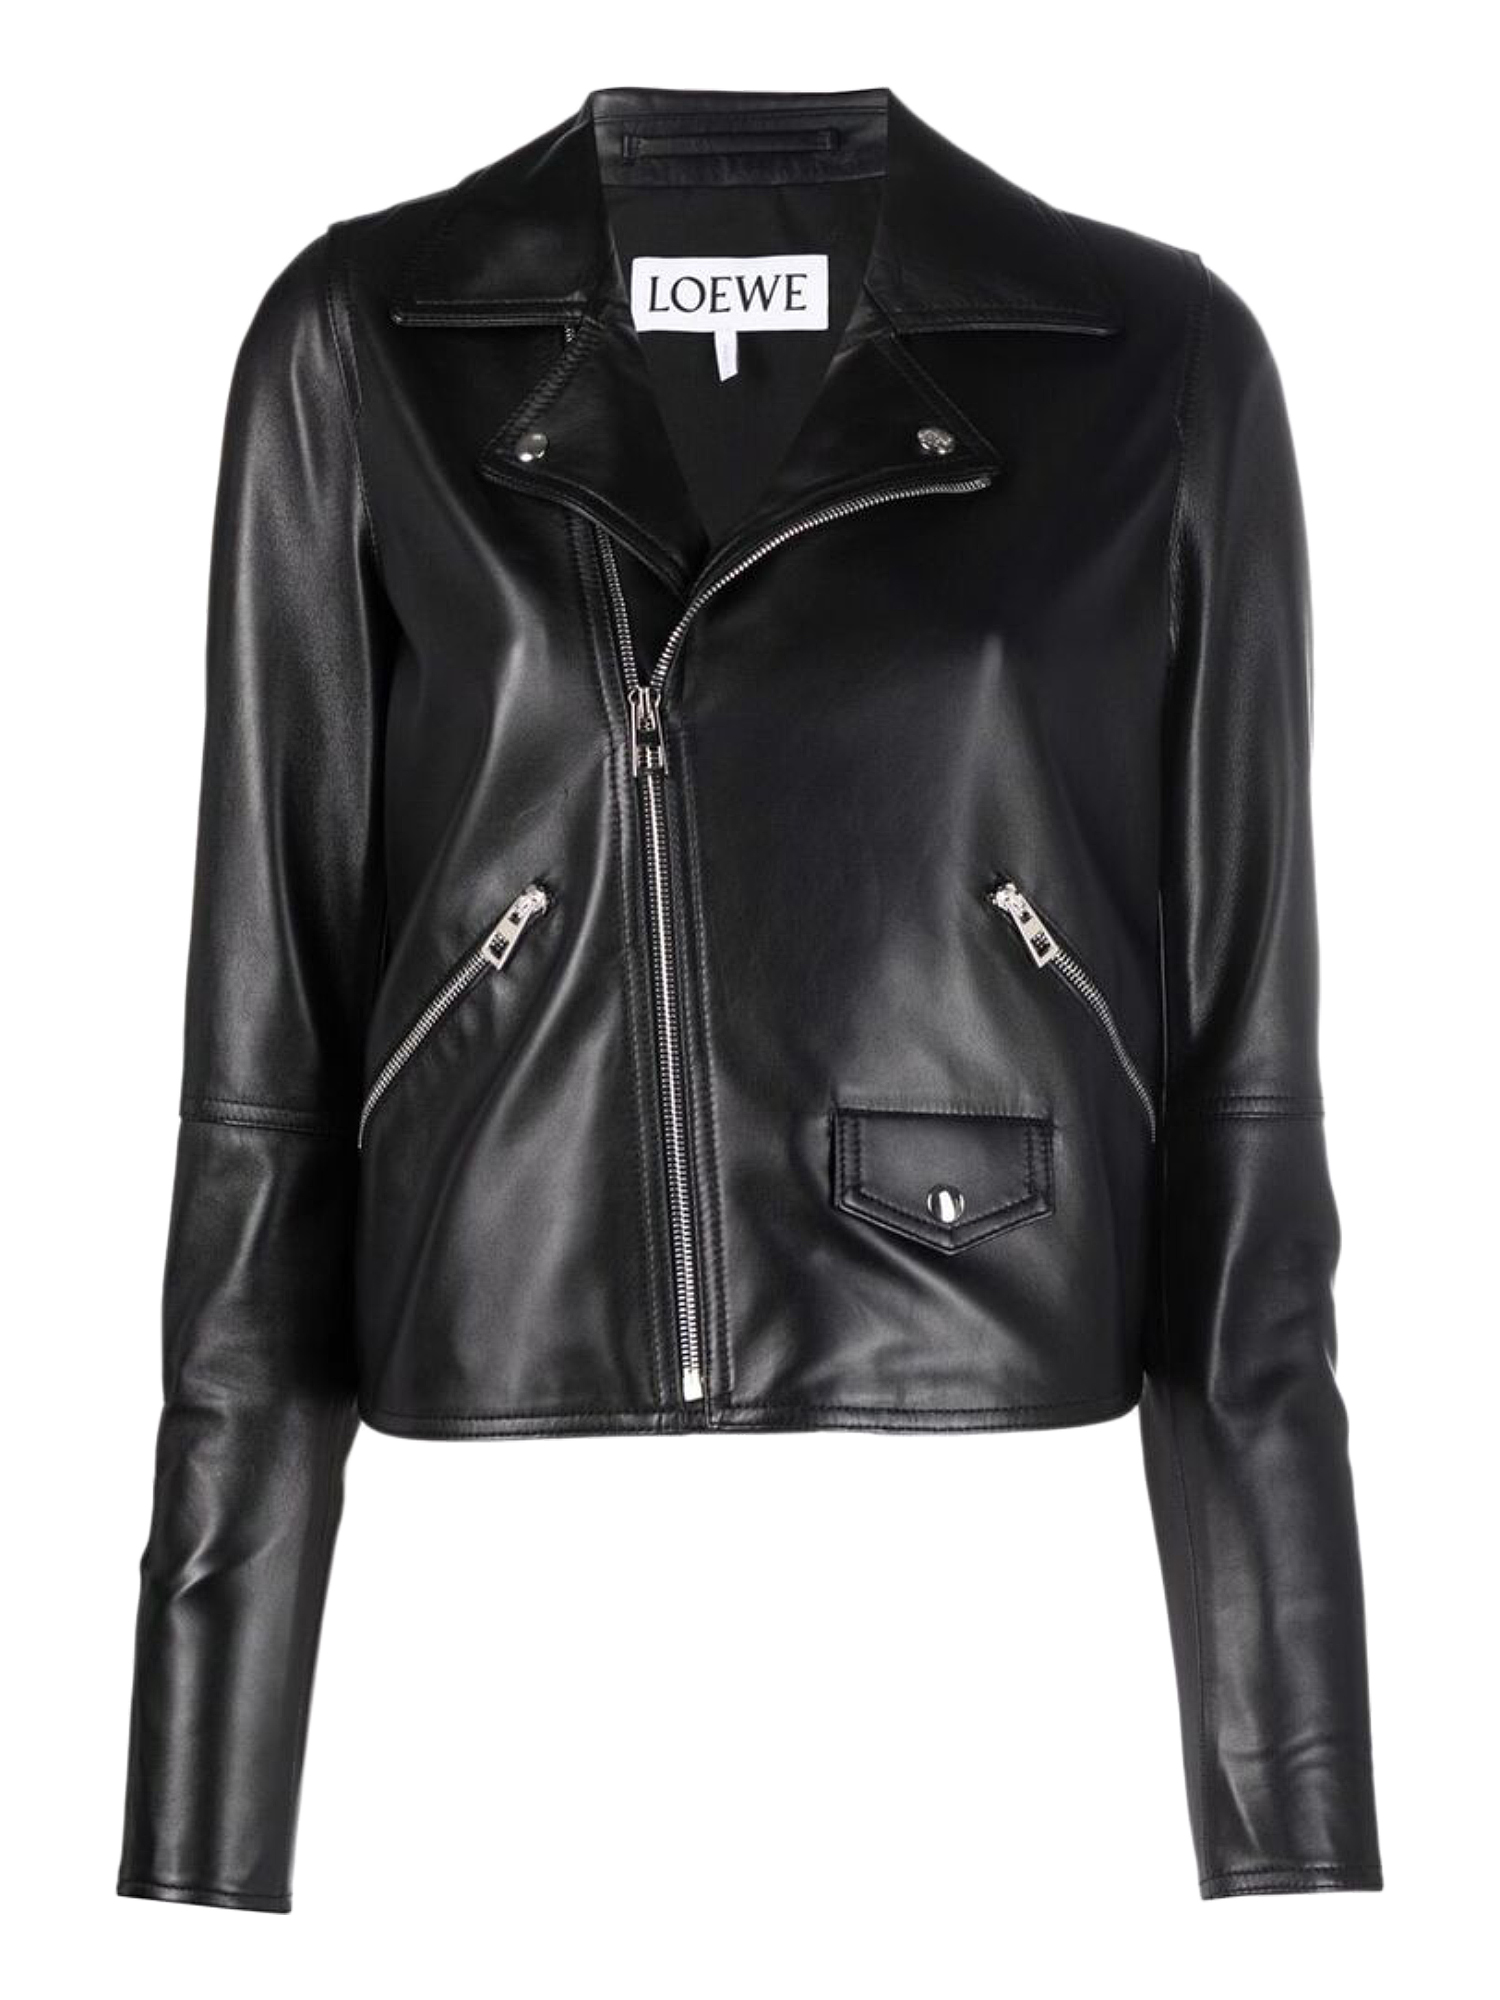 Vestes Pour Femme - Loewe - En Leather Black - Taille:  -